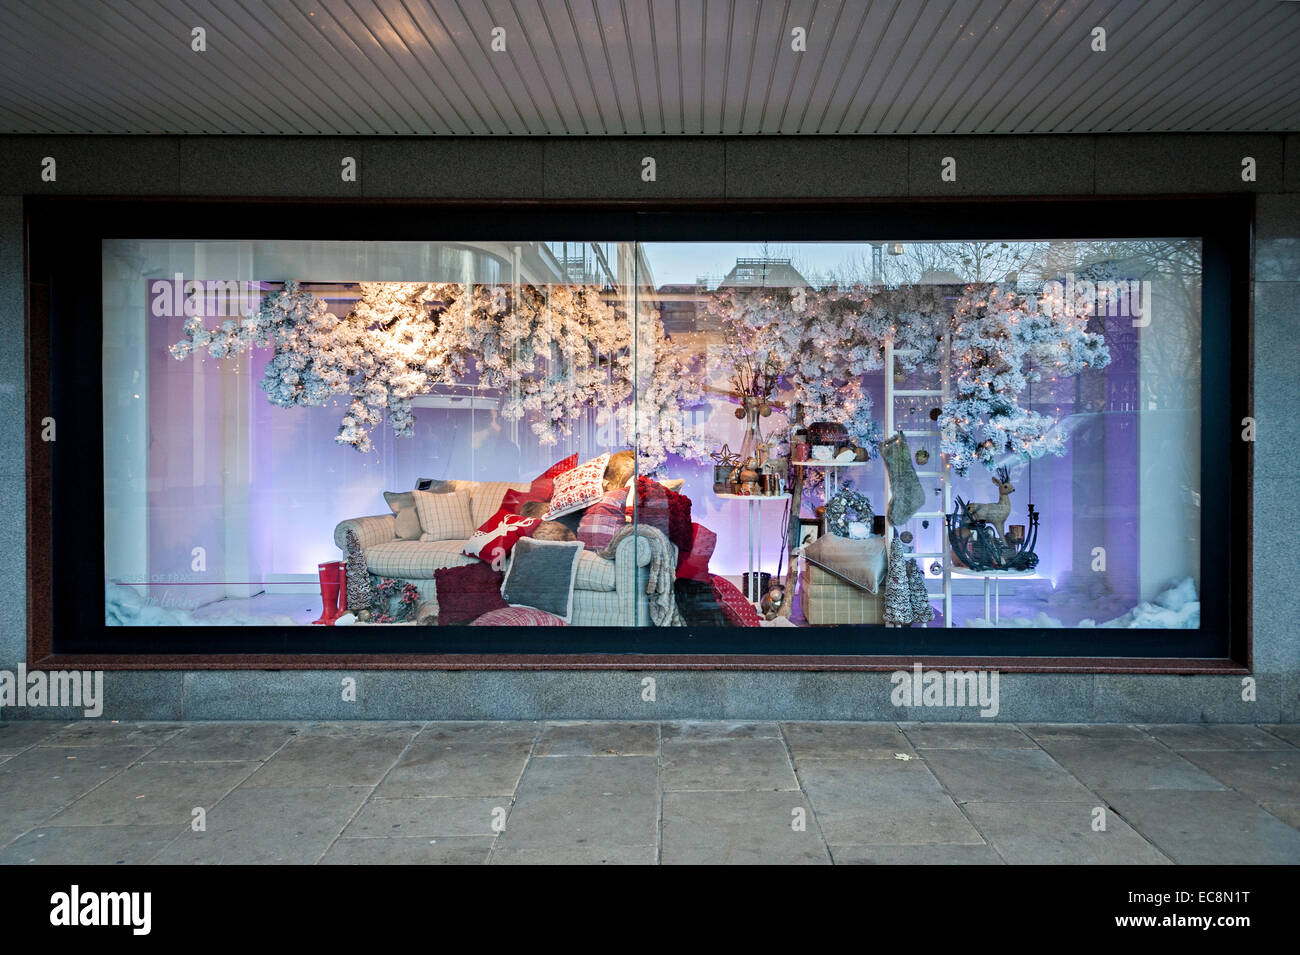 Birmingham Christmas shopping House of Fraser rackhams fenêtre de Noël 8 Décembre 2014 Banque D'Images